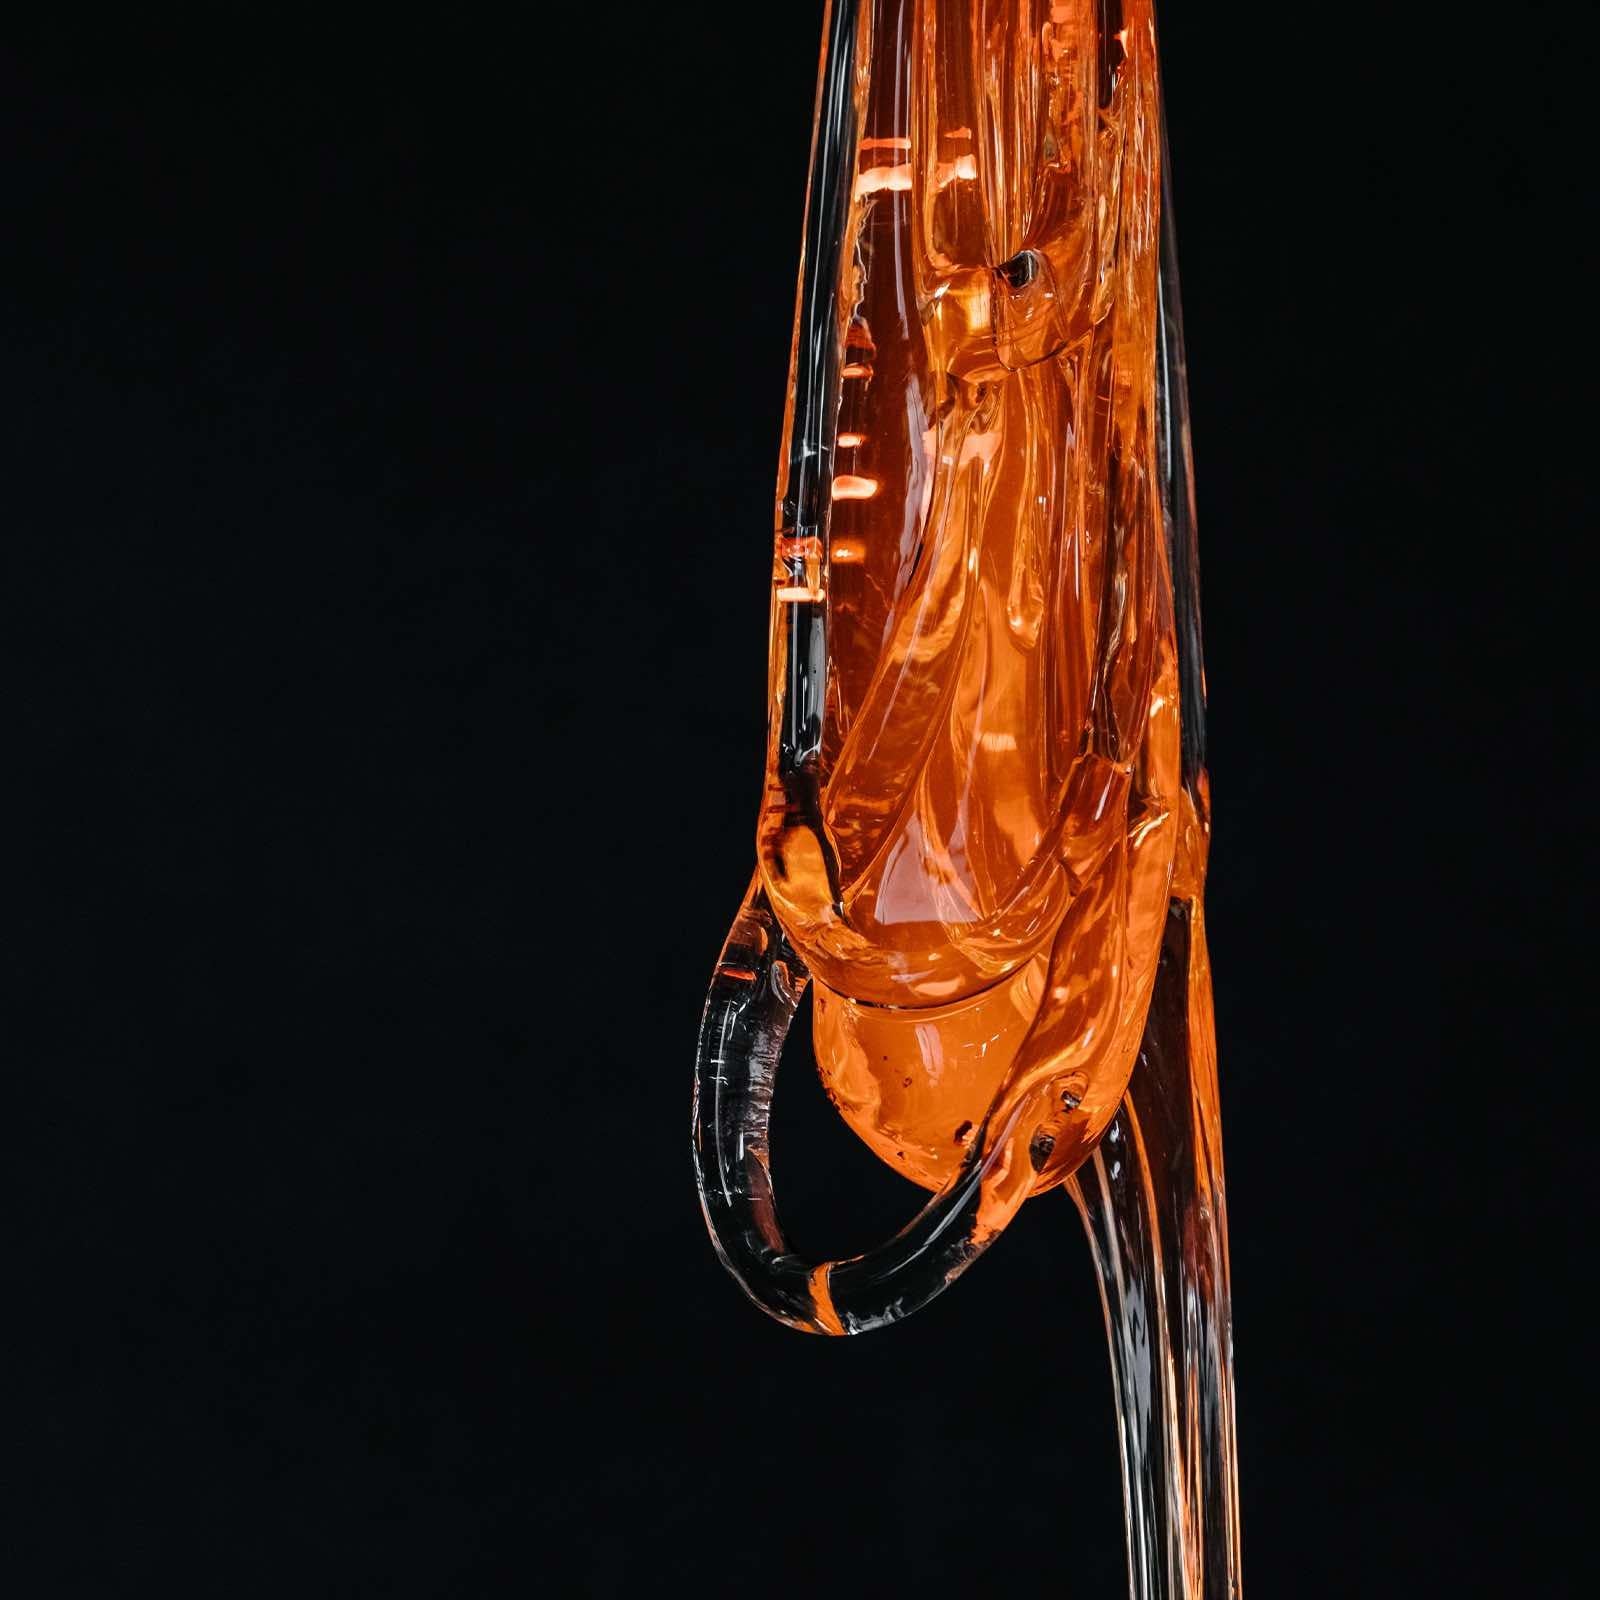 Clear / Black Glass Pendant, Tied-Up Romance by Kateřina Handlová for Bomma 4